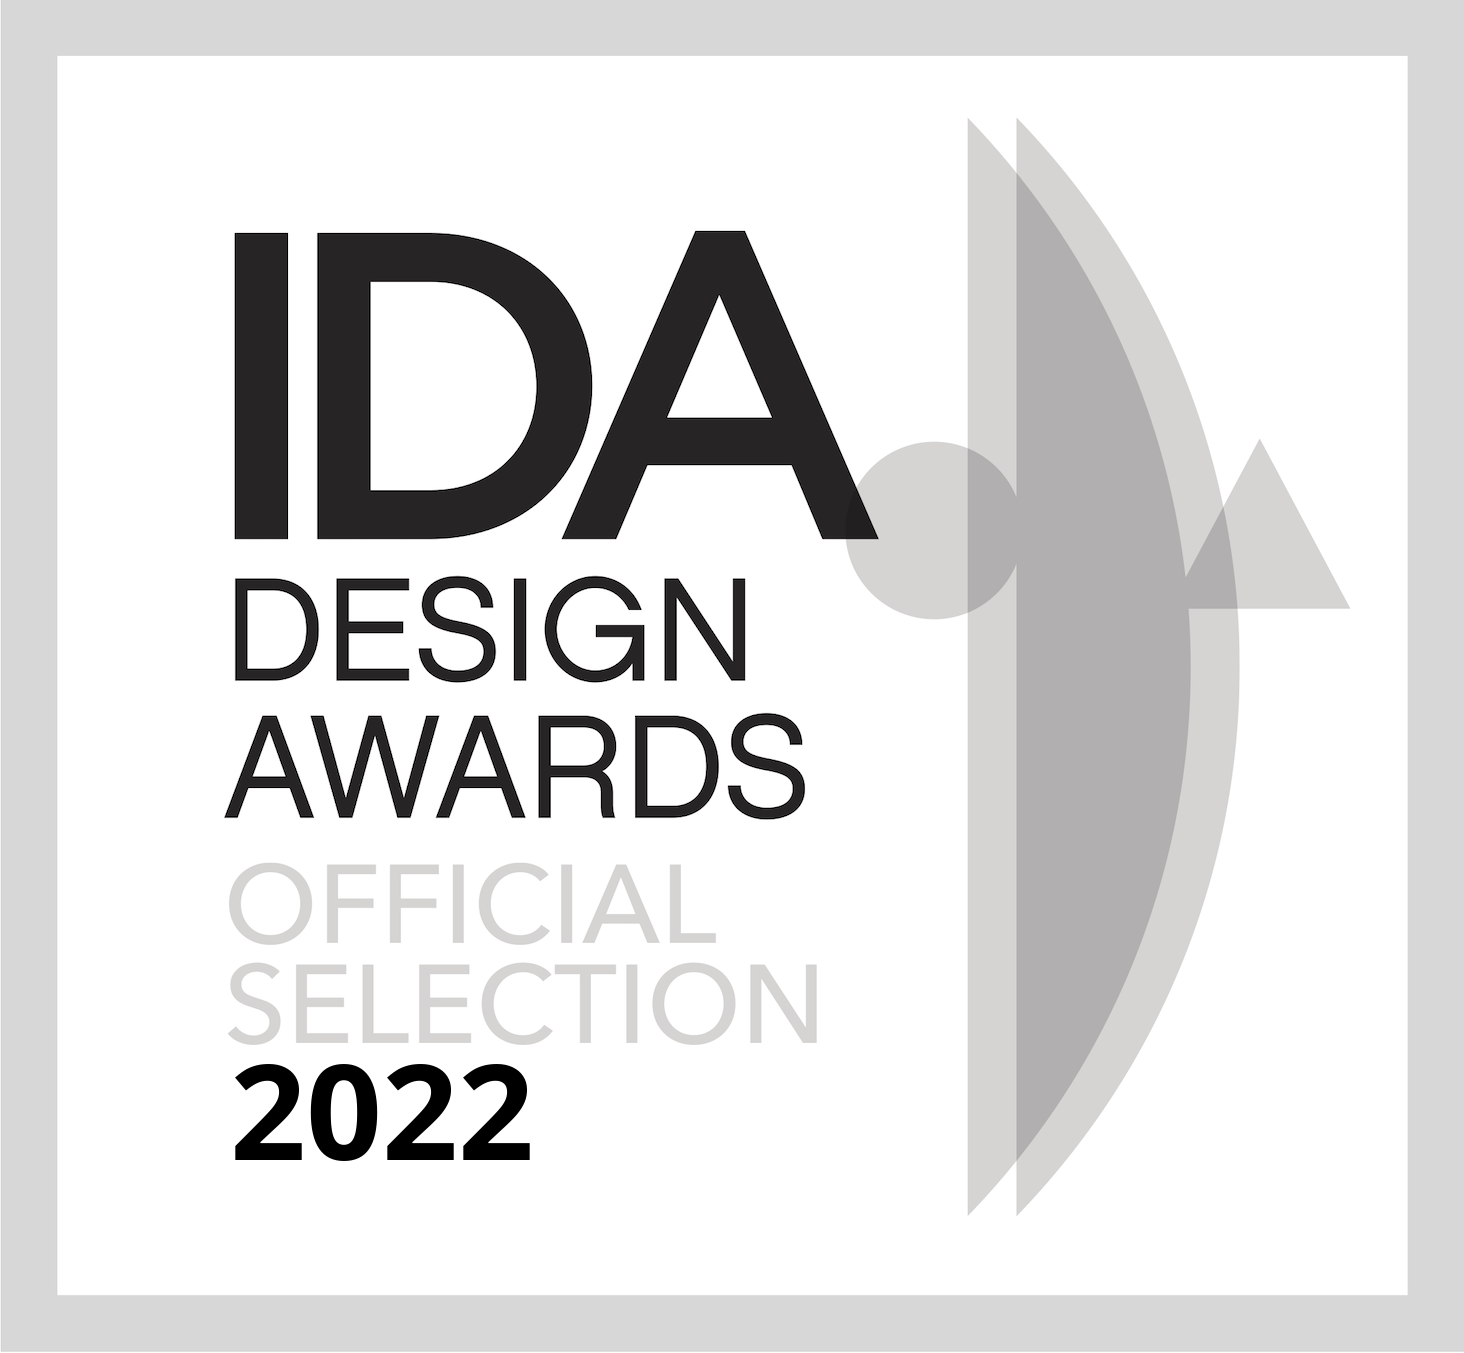 IDA Design Awards - Official Selection